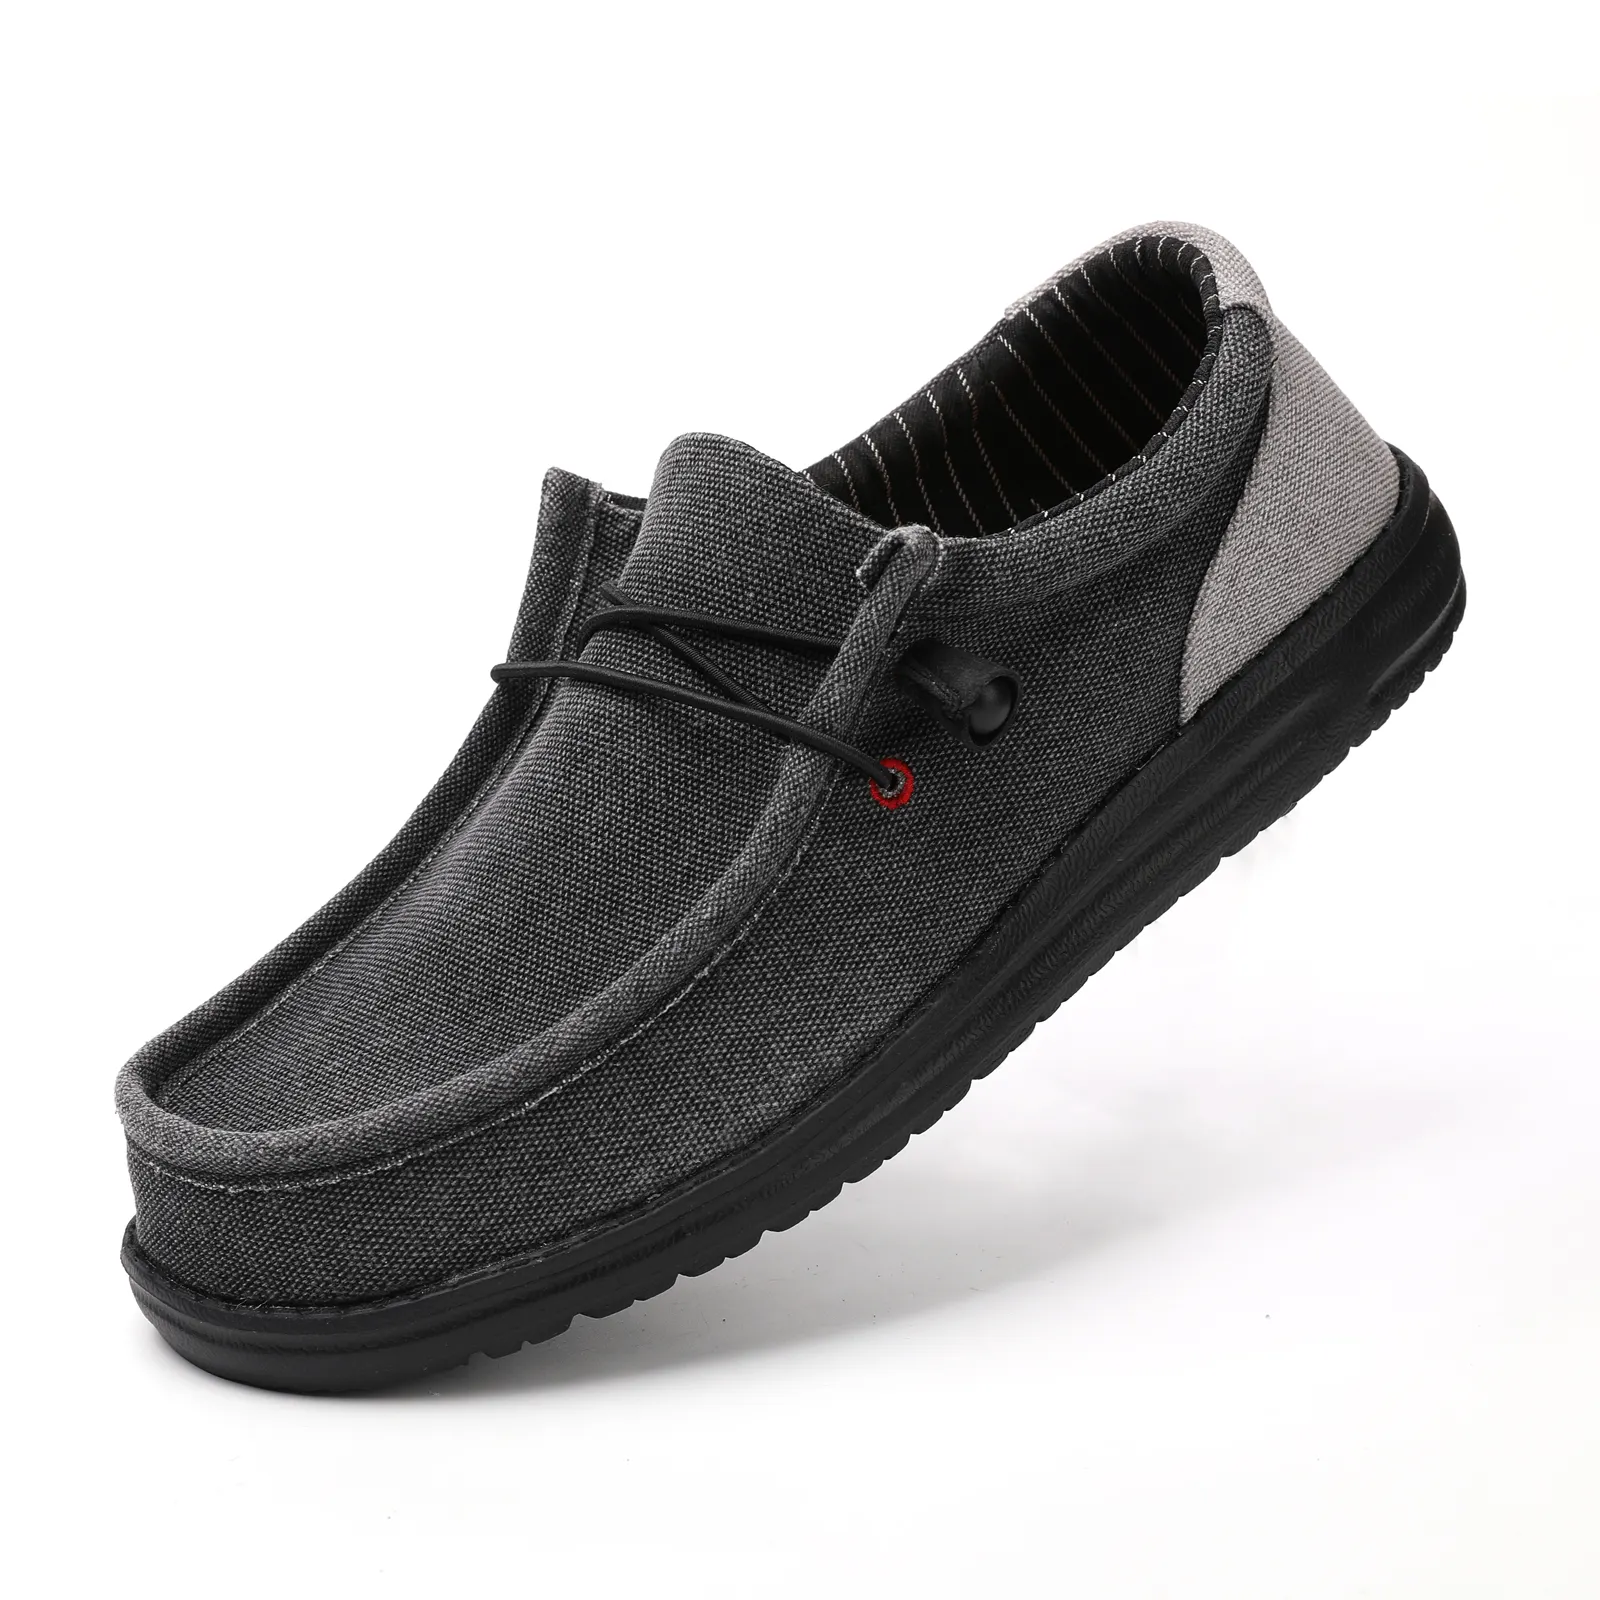 Mens barco sapatos plana fitness caminhada Sneakers Respirável estilo caminhada Sapatos Homens sapatos casuais mocassim para homens